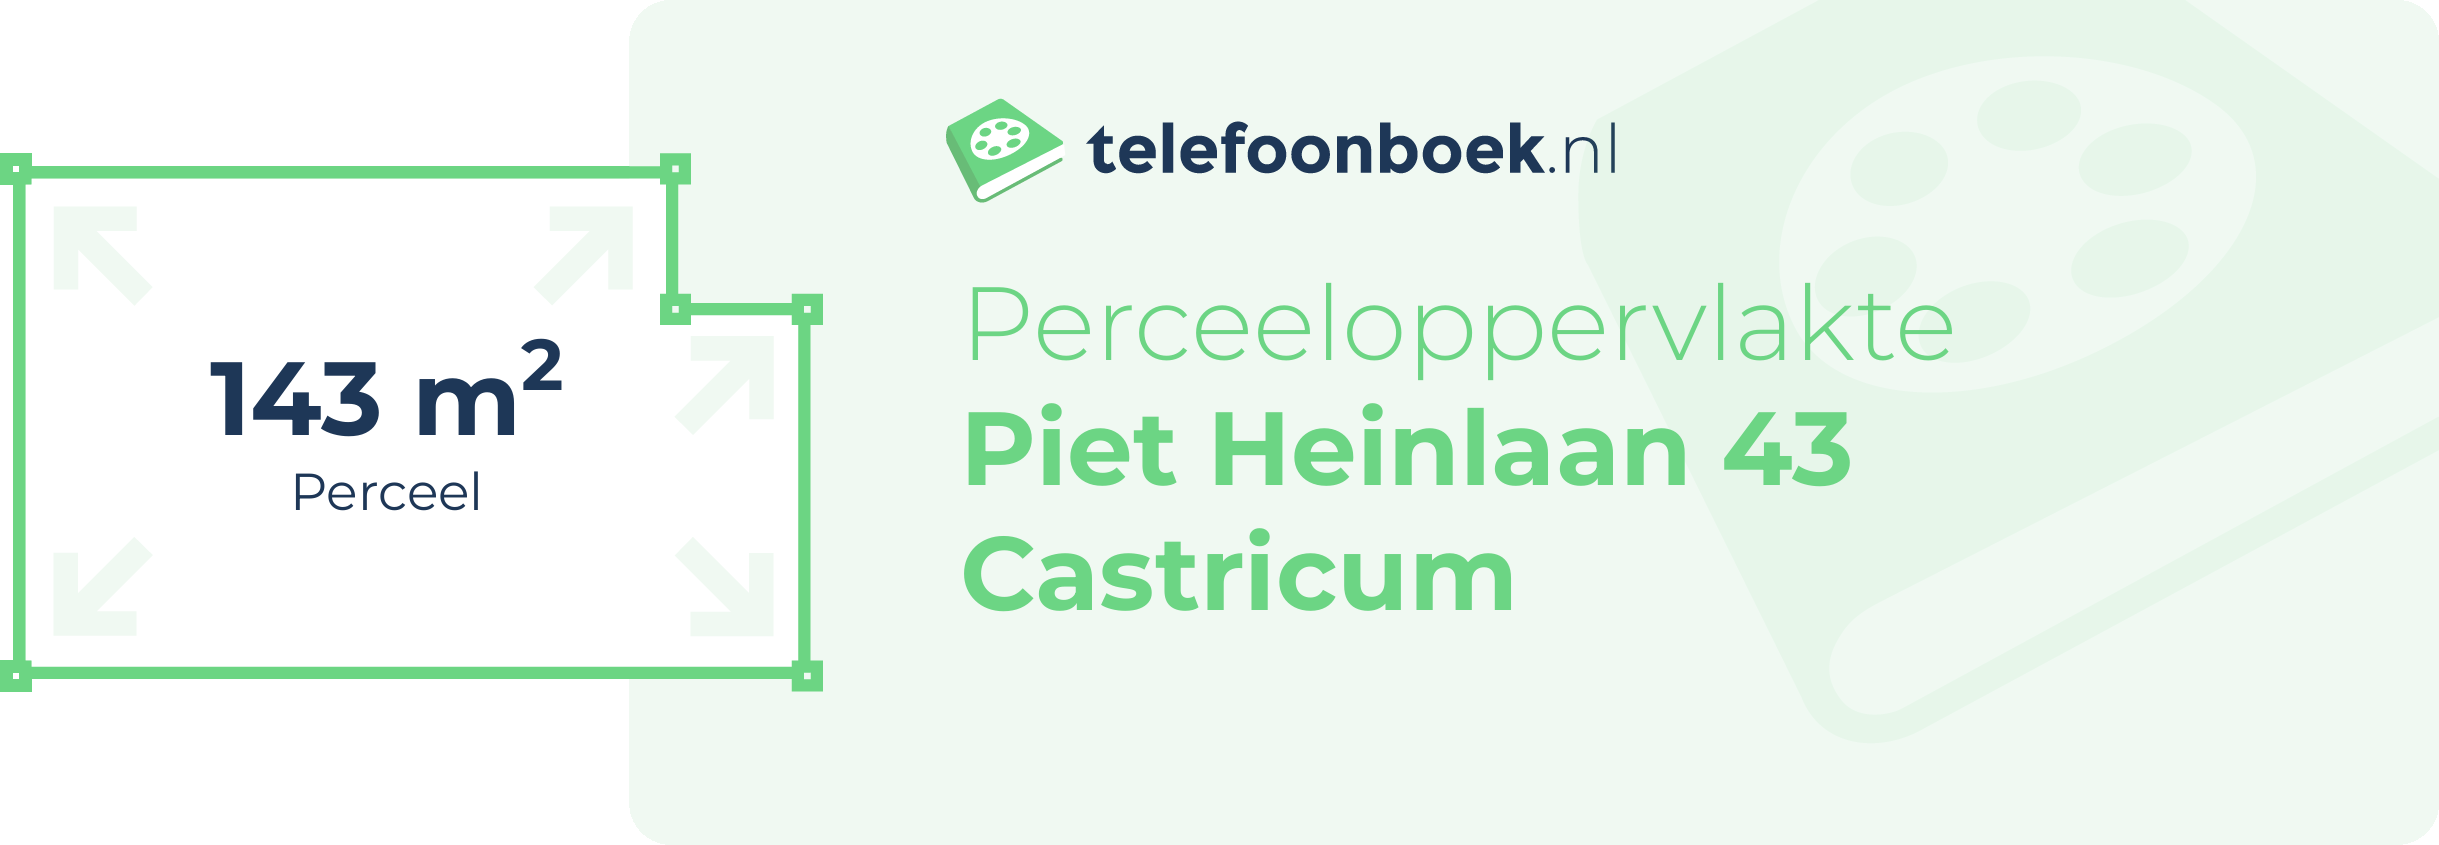 Perceeloppervlakte Piet Heinlaan 43 Castricum